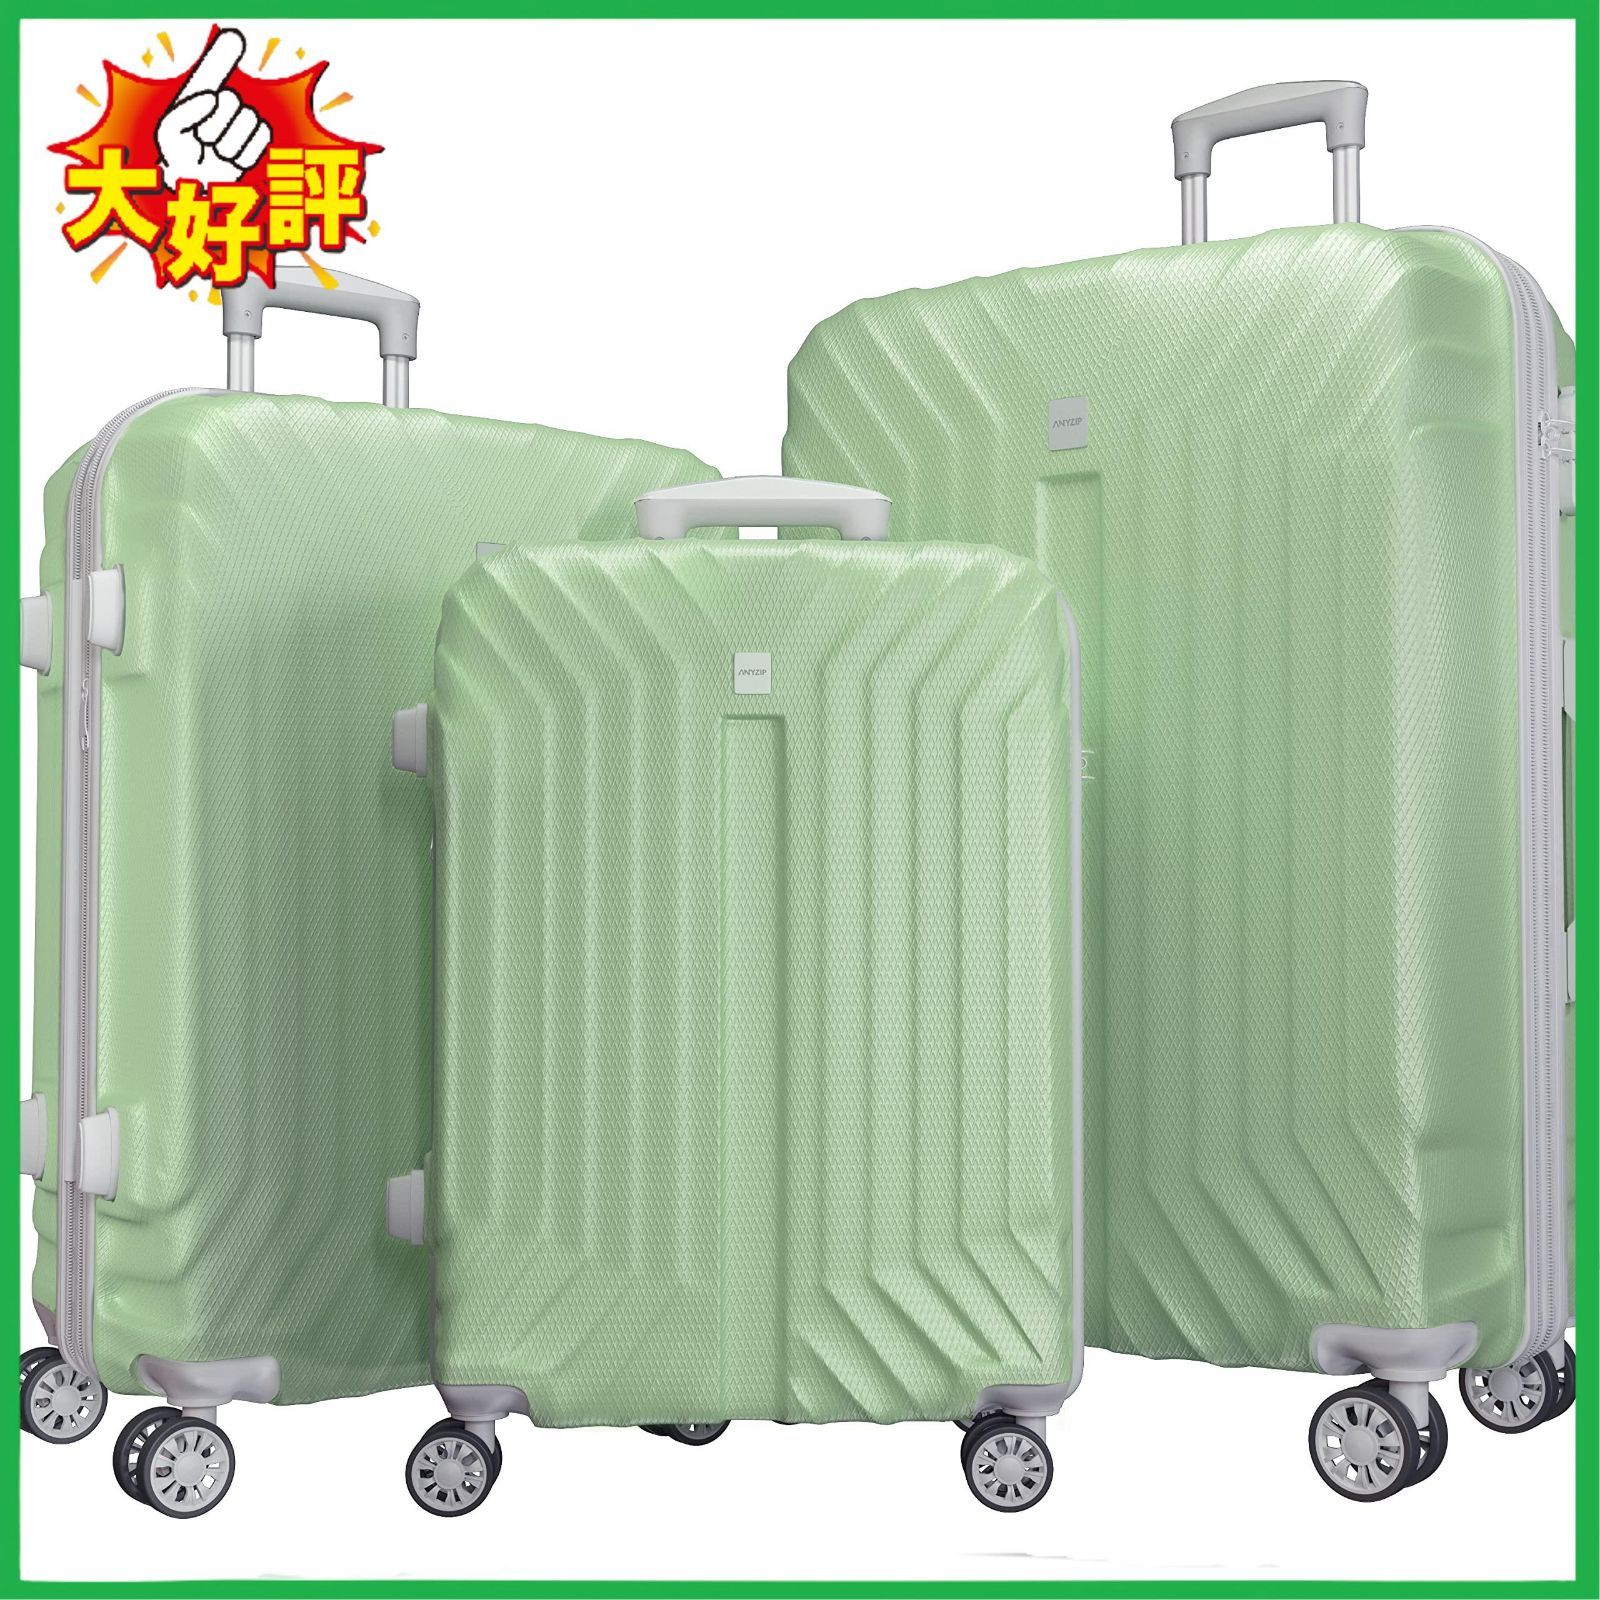 □AnyZip スーツケース キャリーケース キャリーバッグ 超軽量 大容量